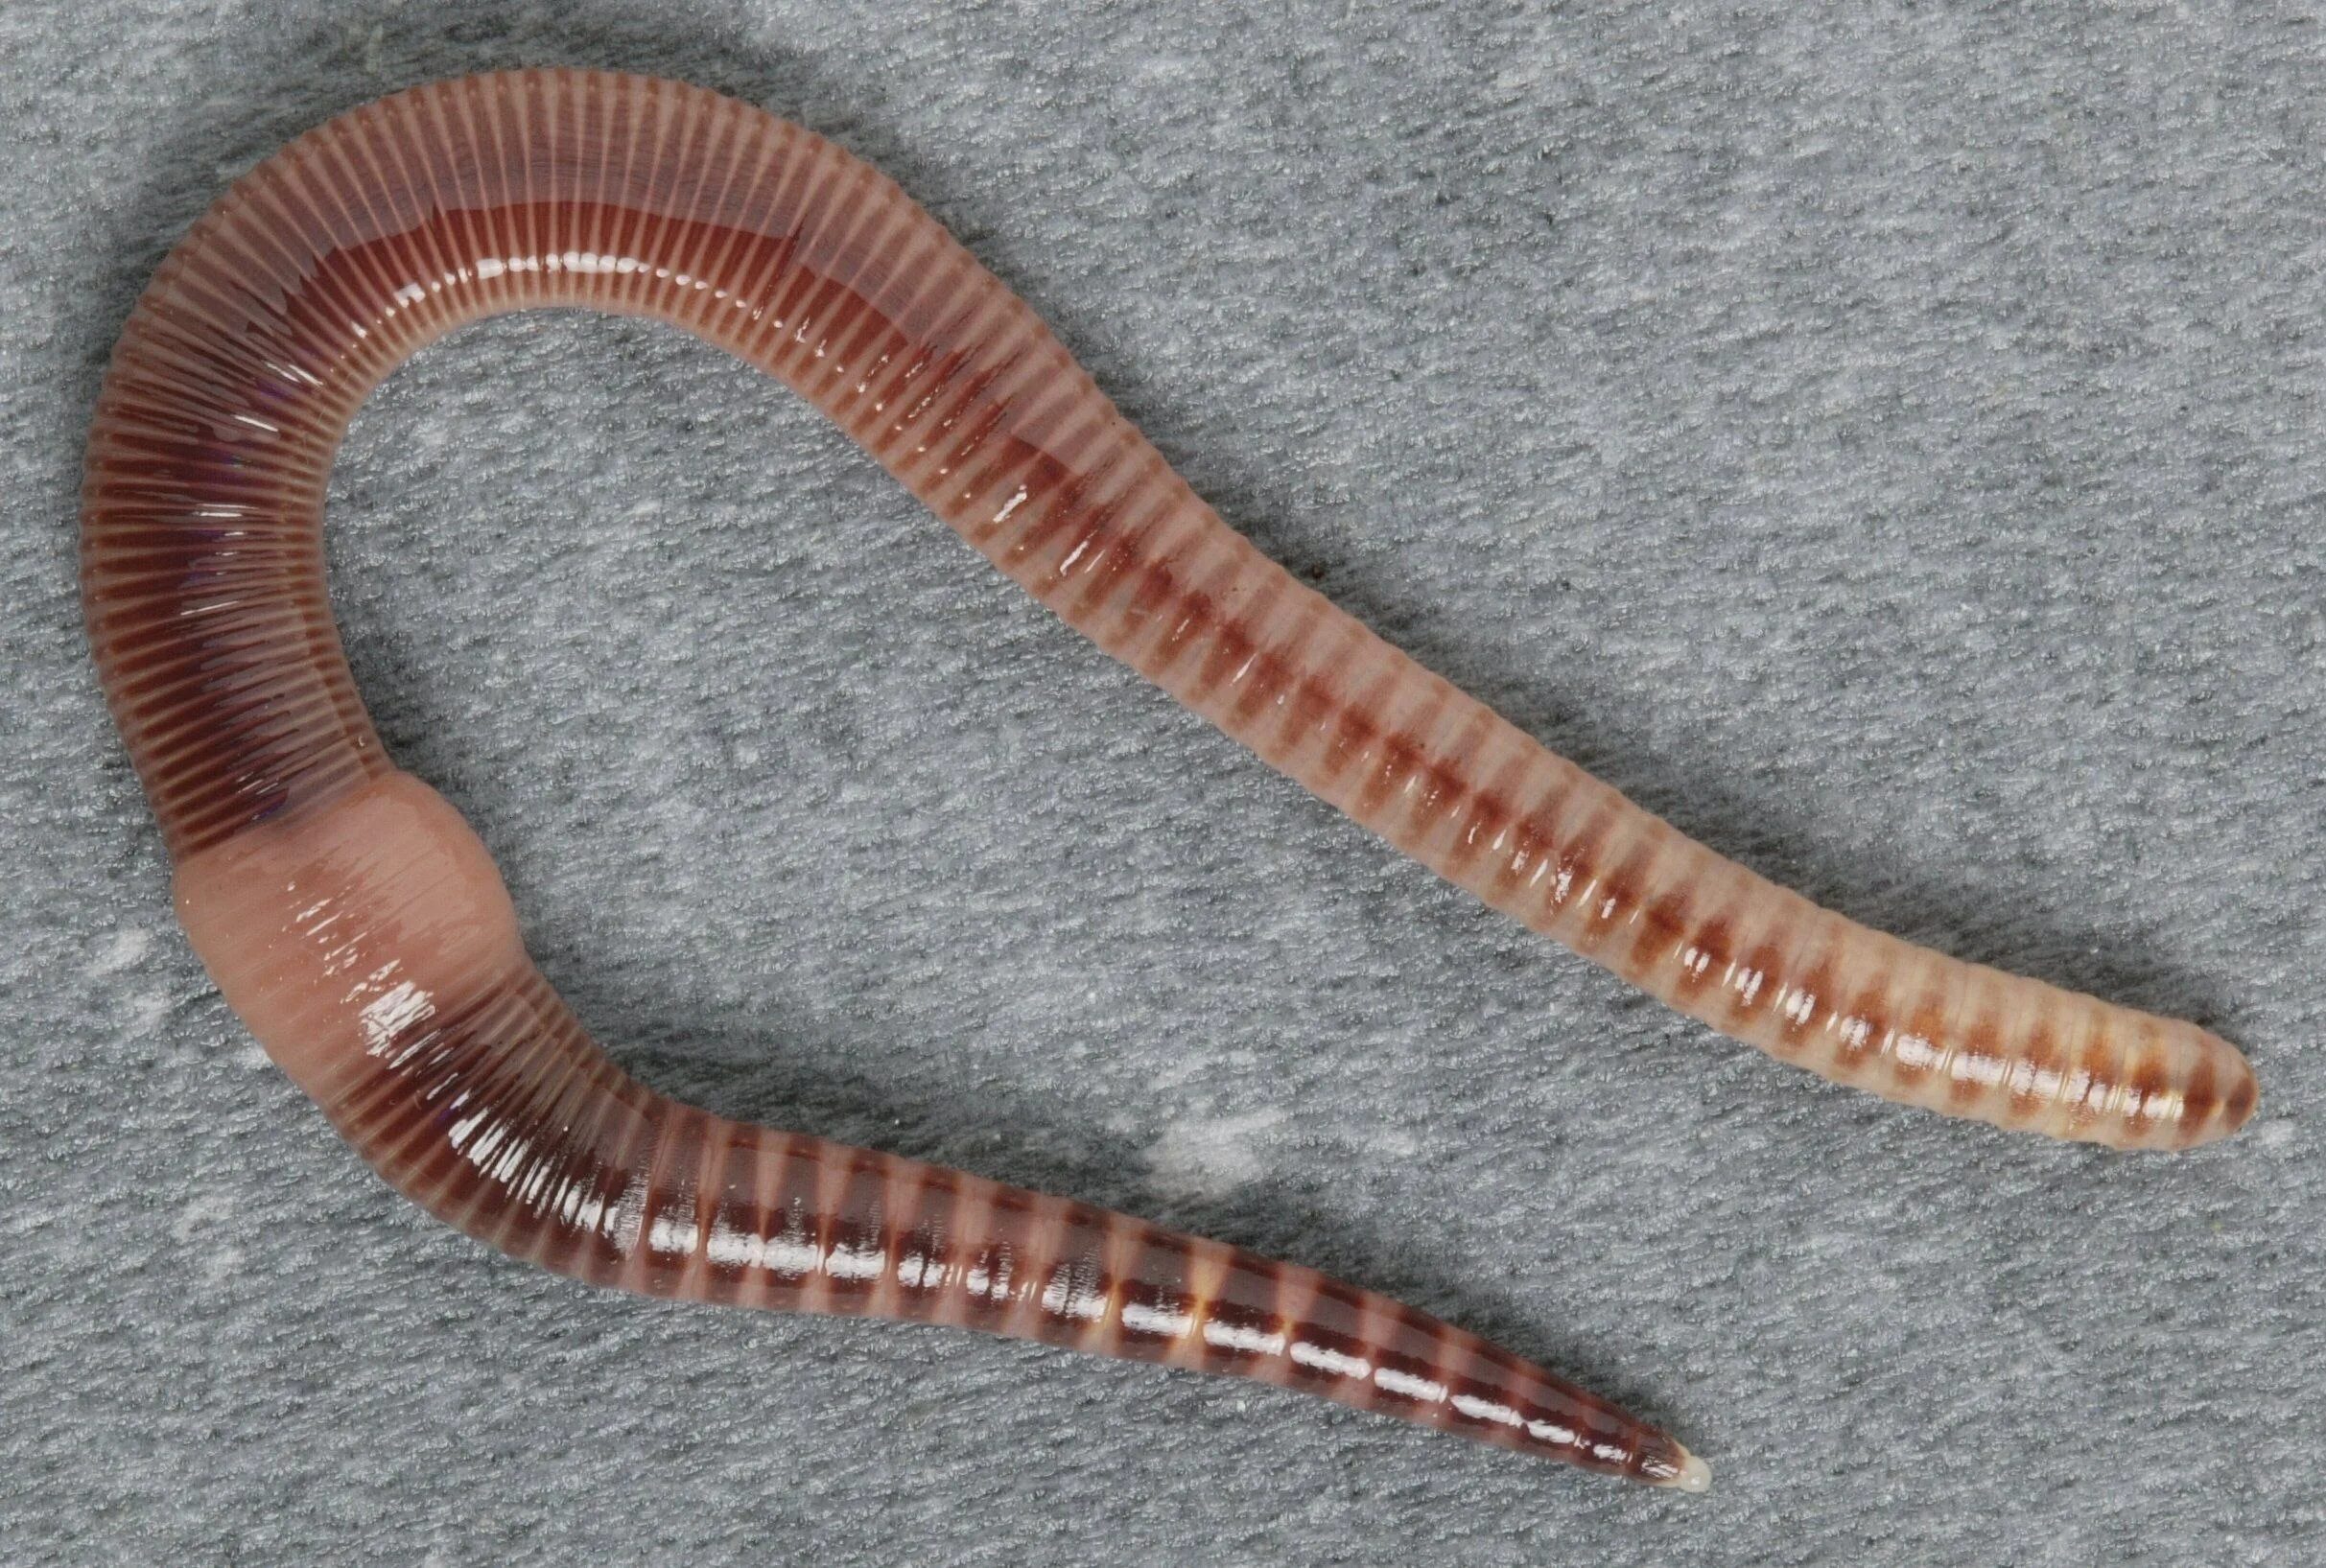 Щетинки дождевого червя. Малошетниковфй крльчатые черви. Малощетинковые кольчатые черви. Малощетинковые черви (дождевой червь). Oligochaeta (Малощетинковые черви).